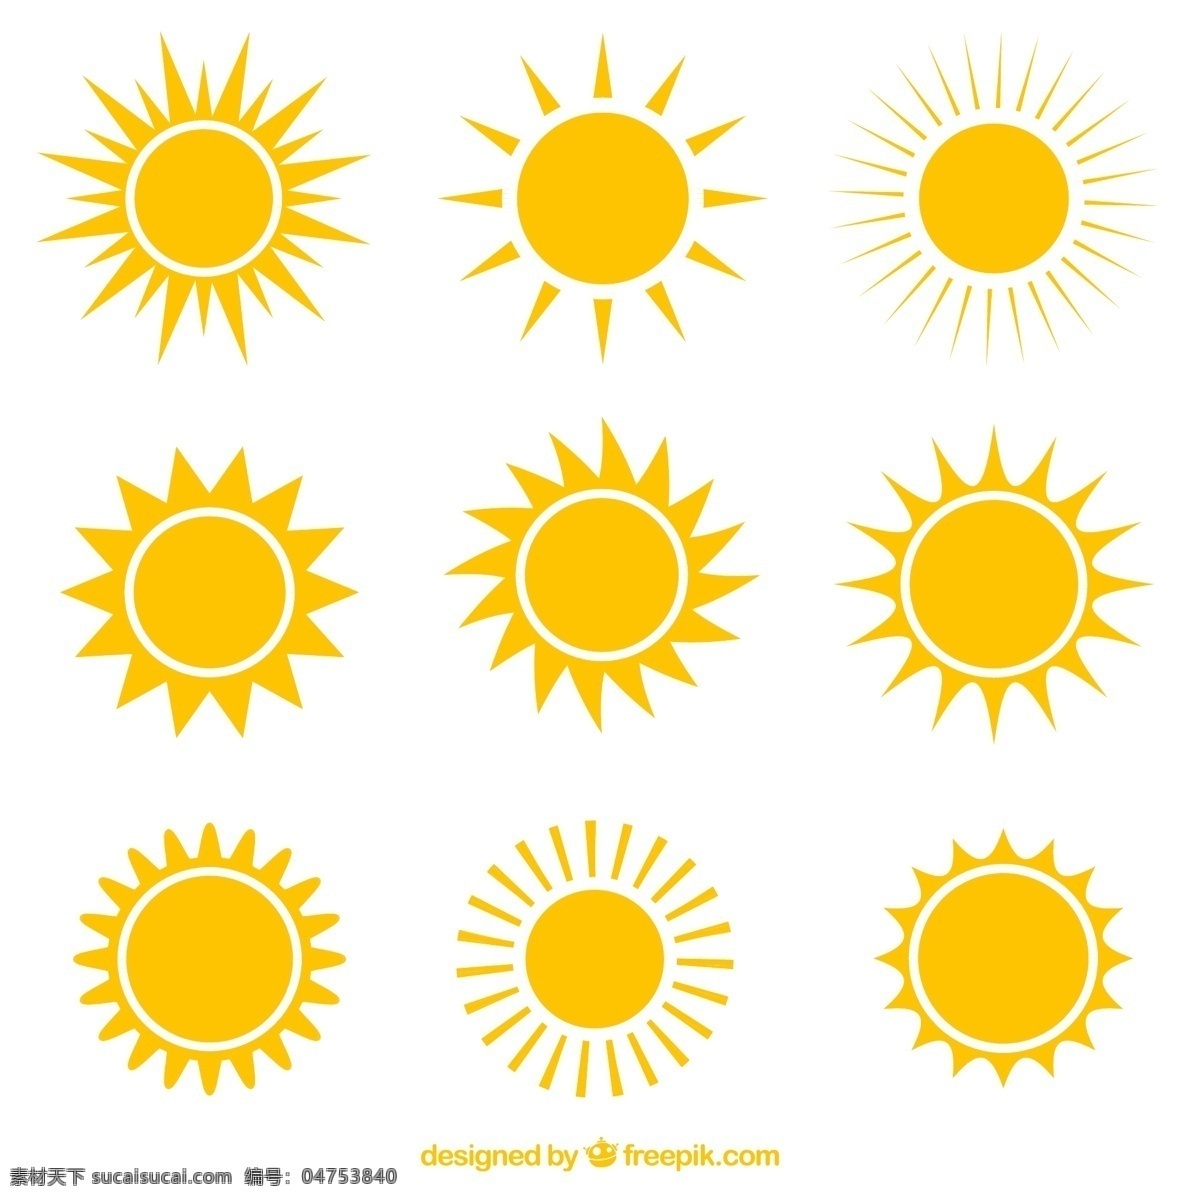 创意 太阳 图标 矢量图 阳光 标签 夏季 夏天 夏日 炎热 插画 背景 海报 画册